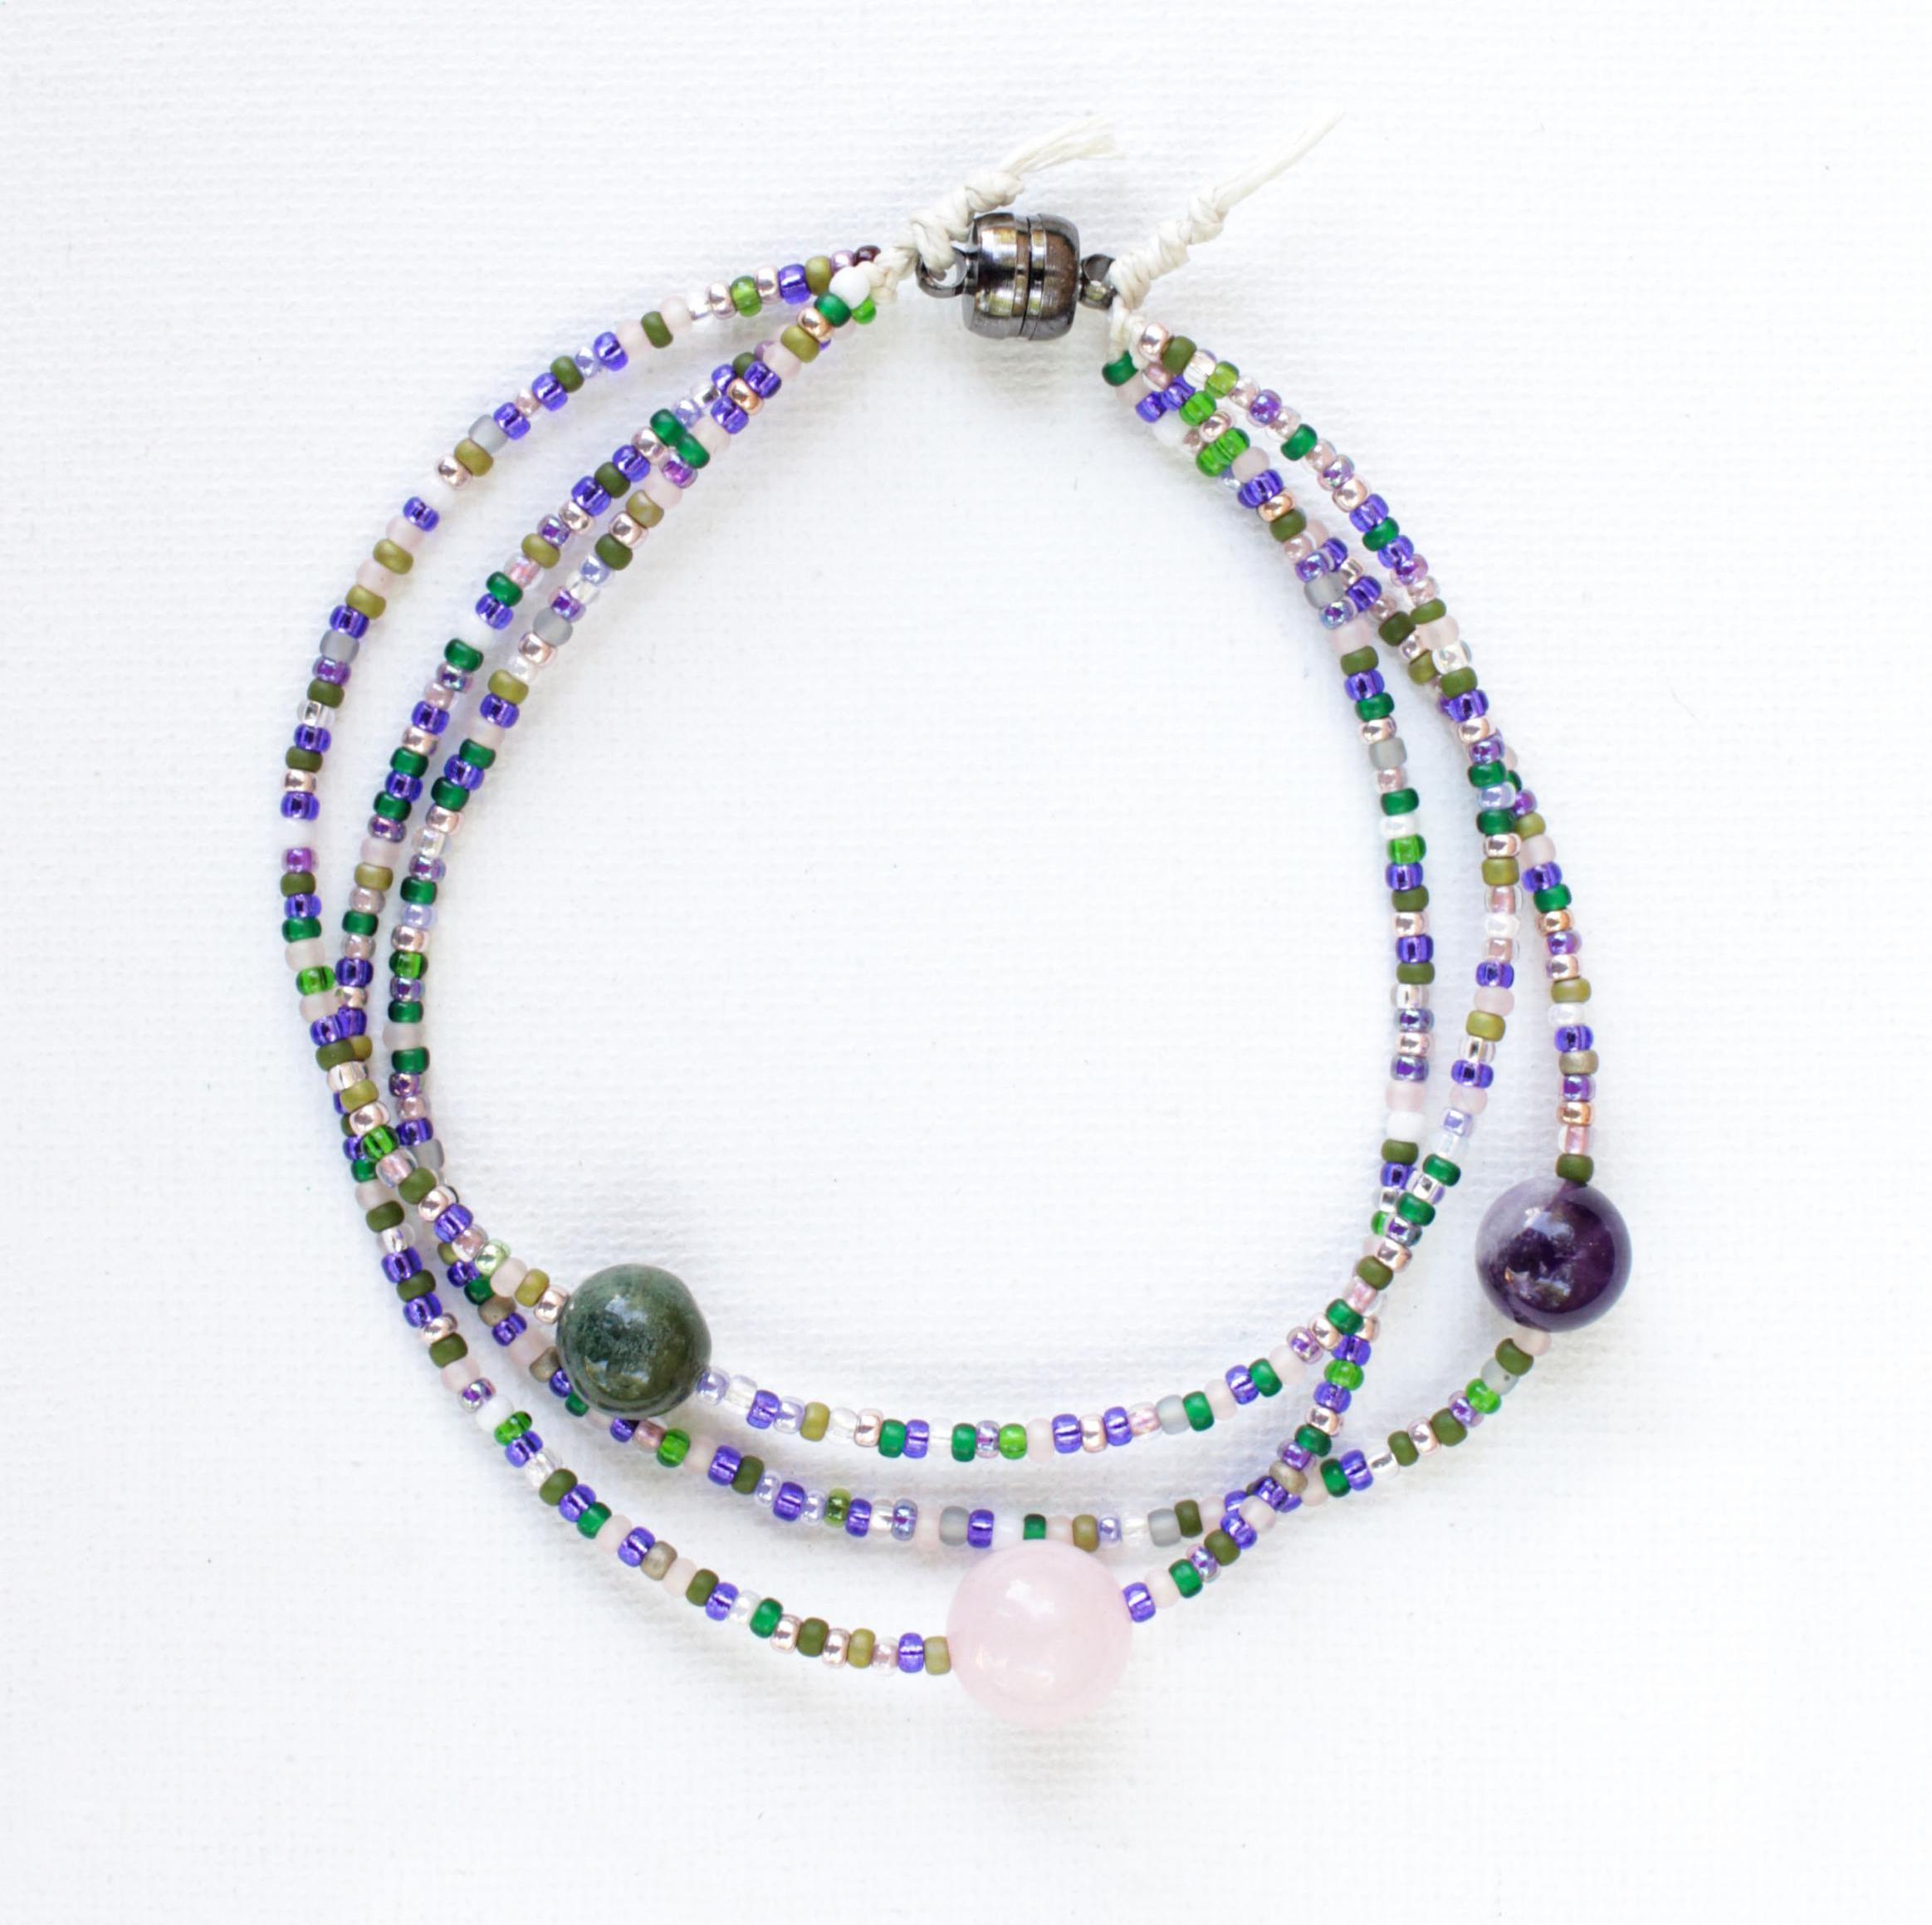 Feminine Energy Crystals Seed Bead Multi-strand Bracelet Anklet | Rose Quartz | Moss Agate | Amethyst | Made to Order | Goddess Gift